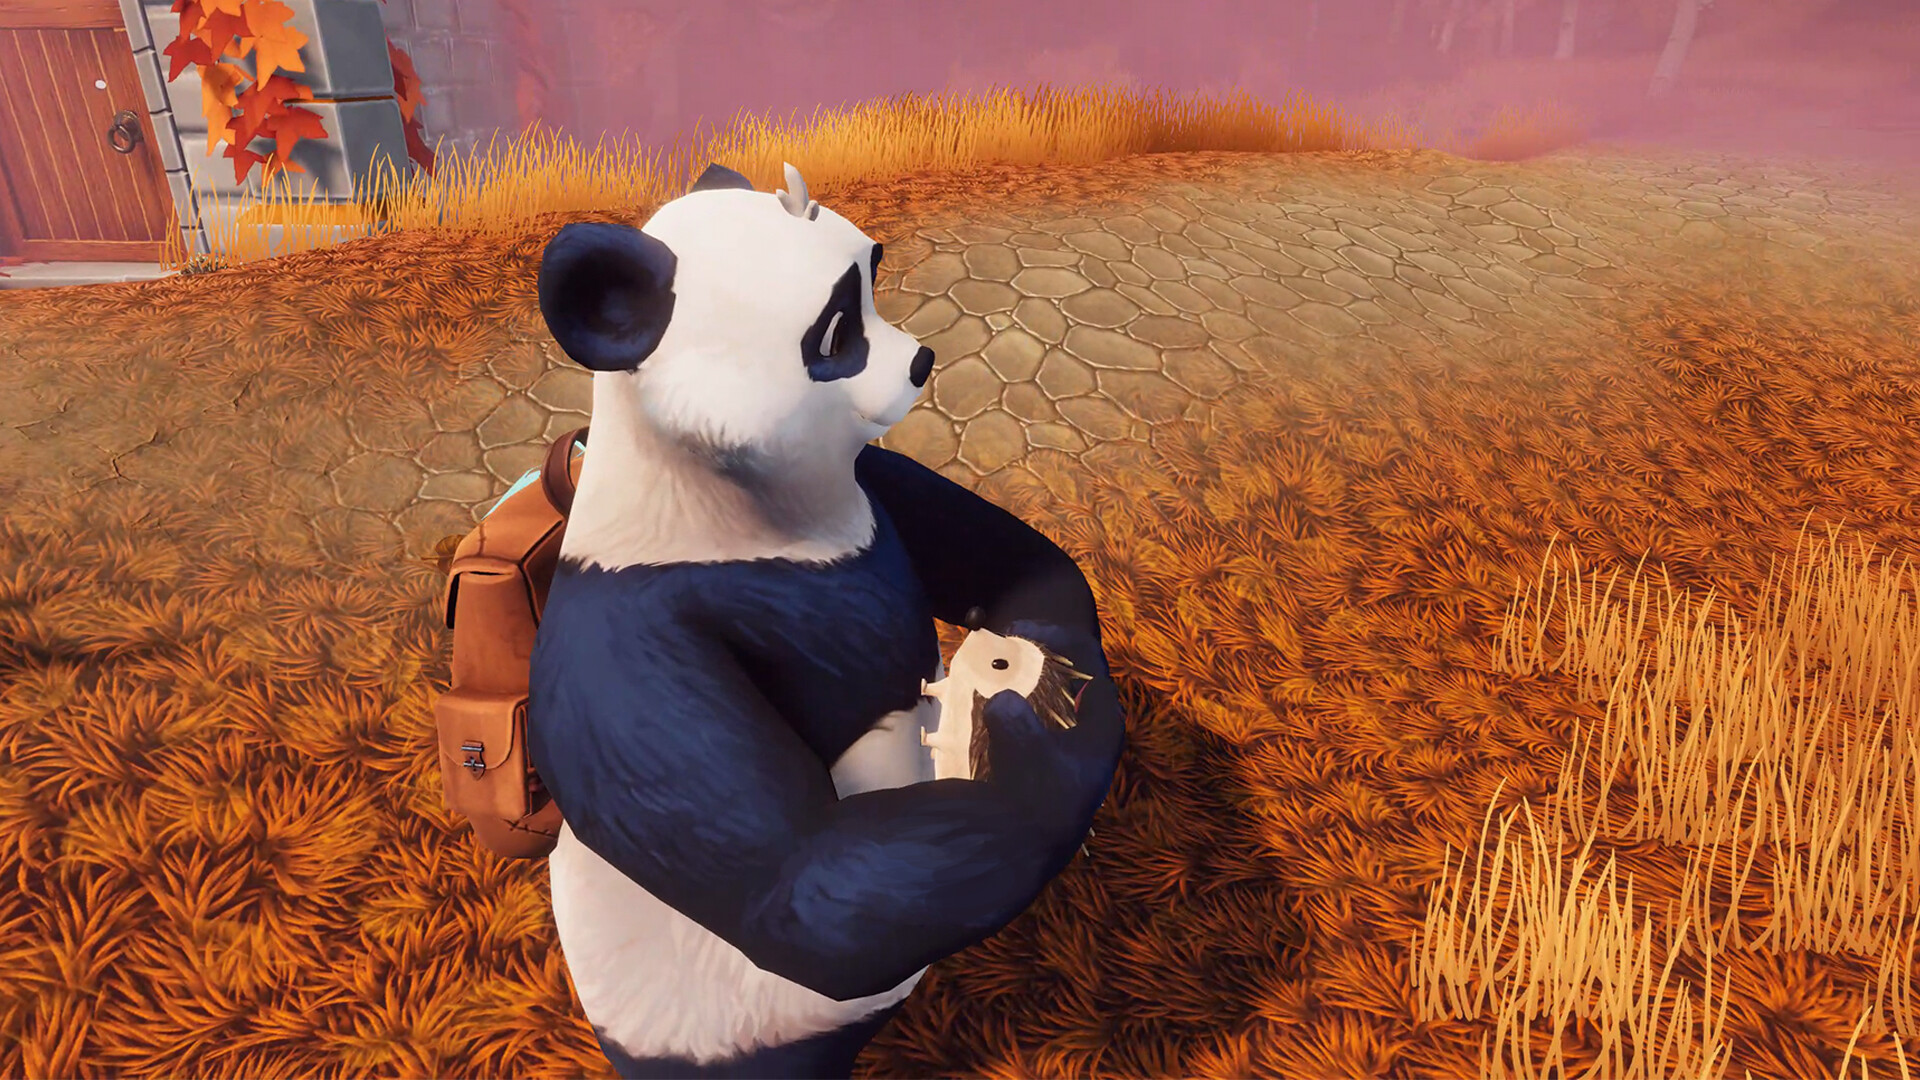 Dancing Pandas Free Download